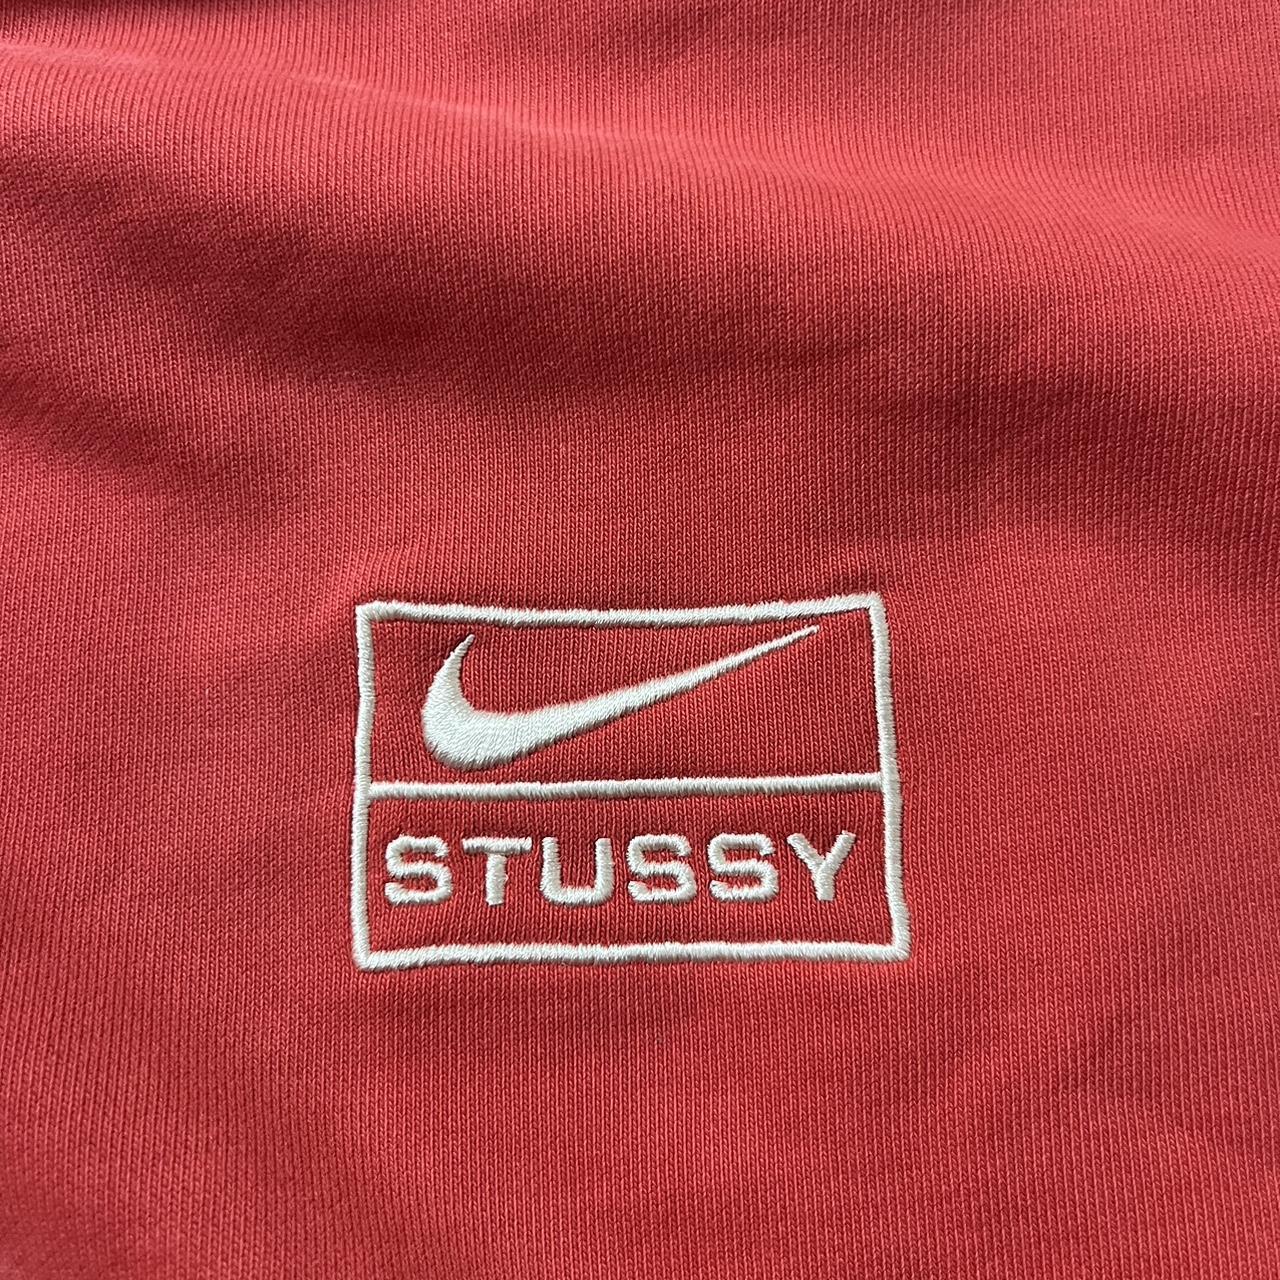 Stussy x Nike zip up - Depop